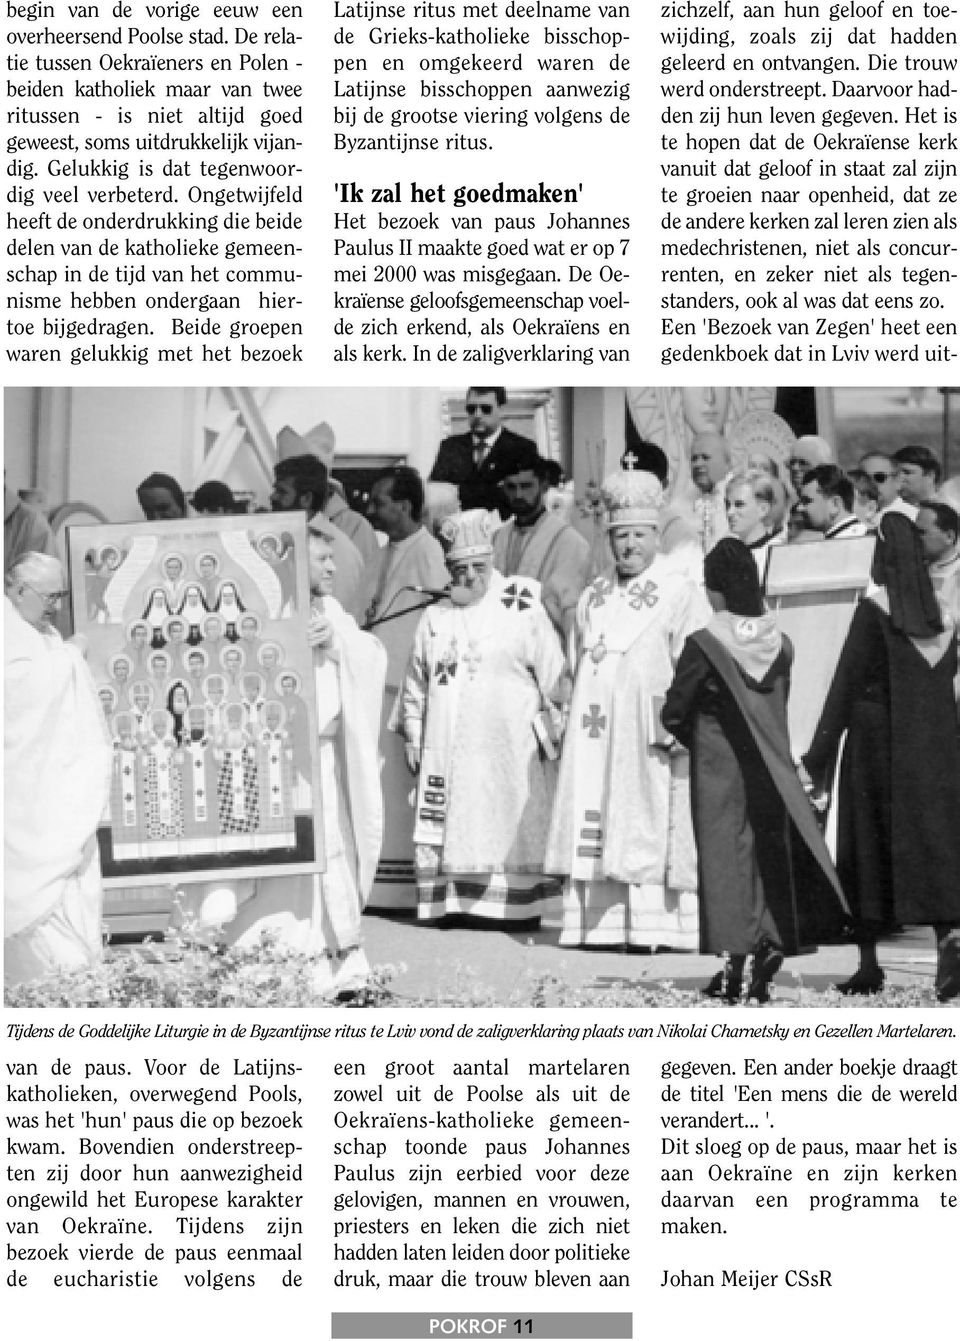 Beide groepen waren gelukkig met het bezoek Latijnse ritus met deelname van de Grieks-katholieke bisschoppen en omgekeerd waren de Latijnse bisschoppen aanwezig bij de grootse viering volgens de